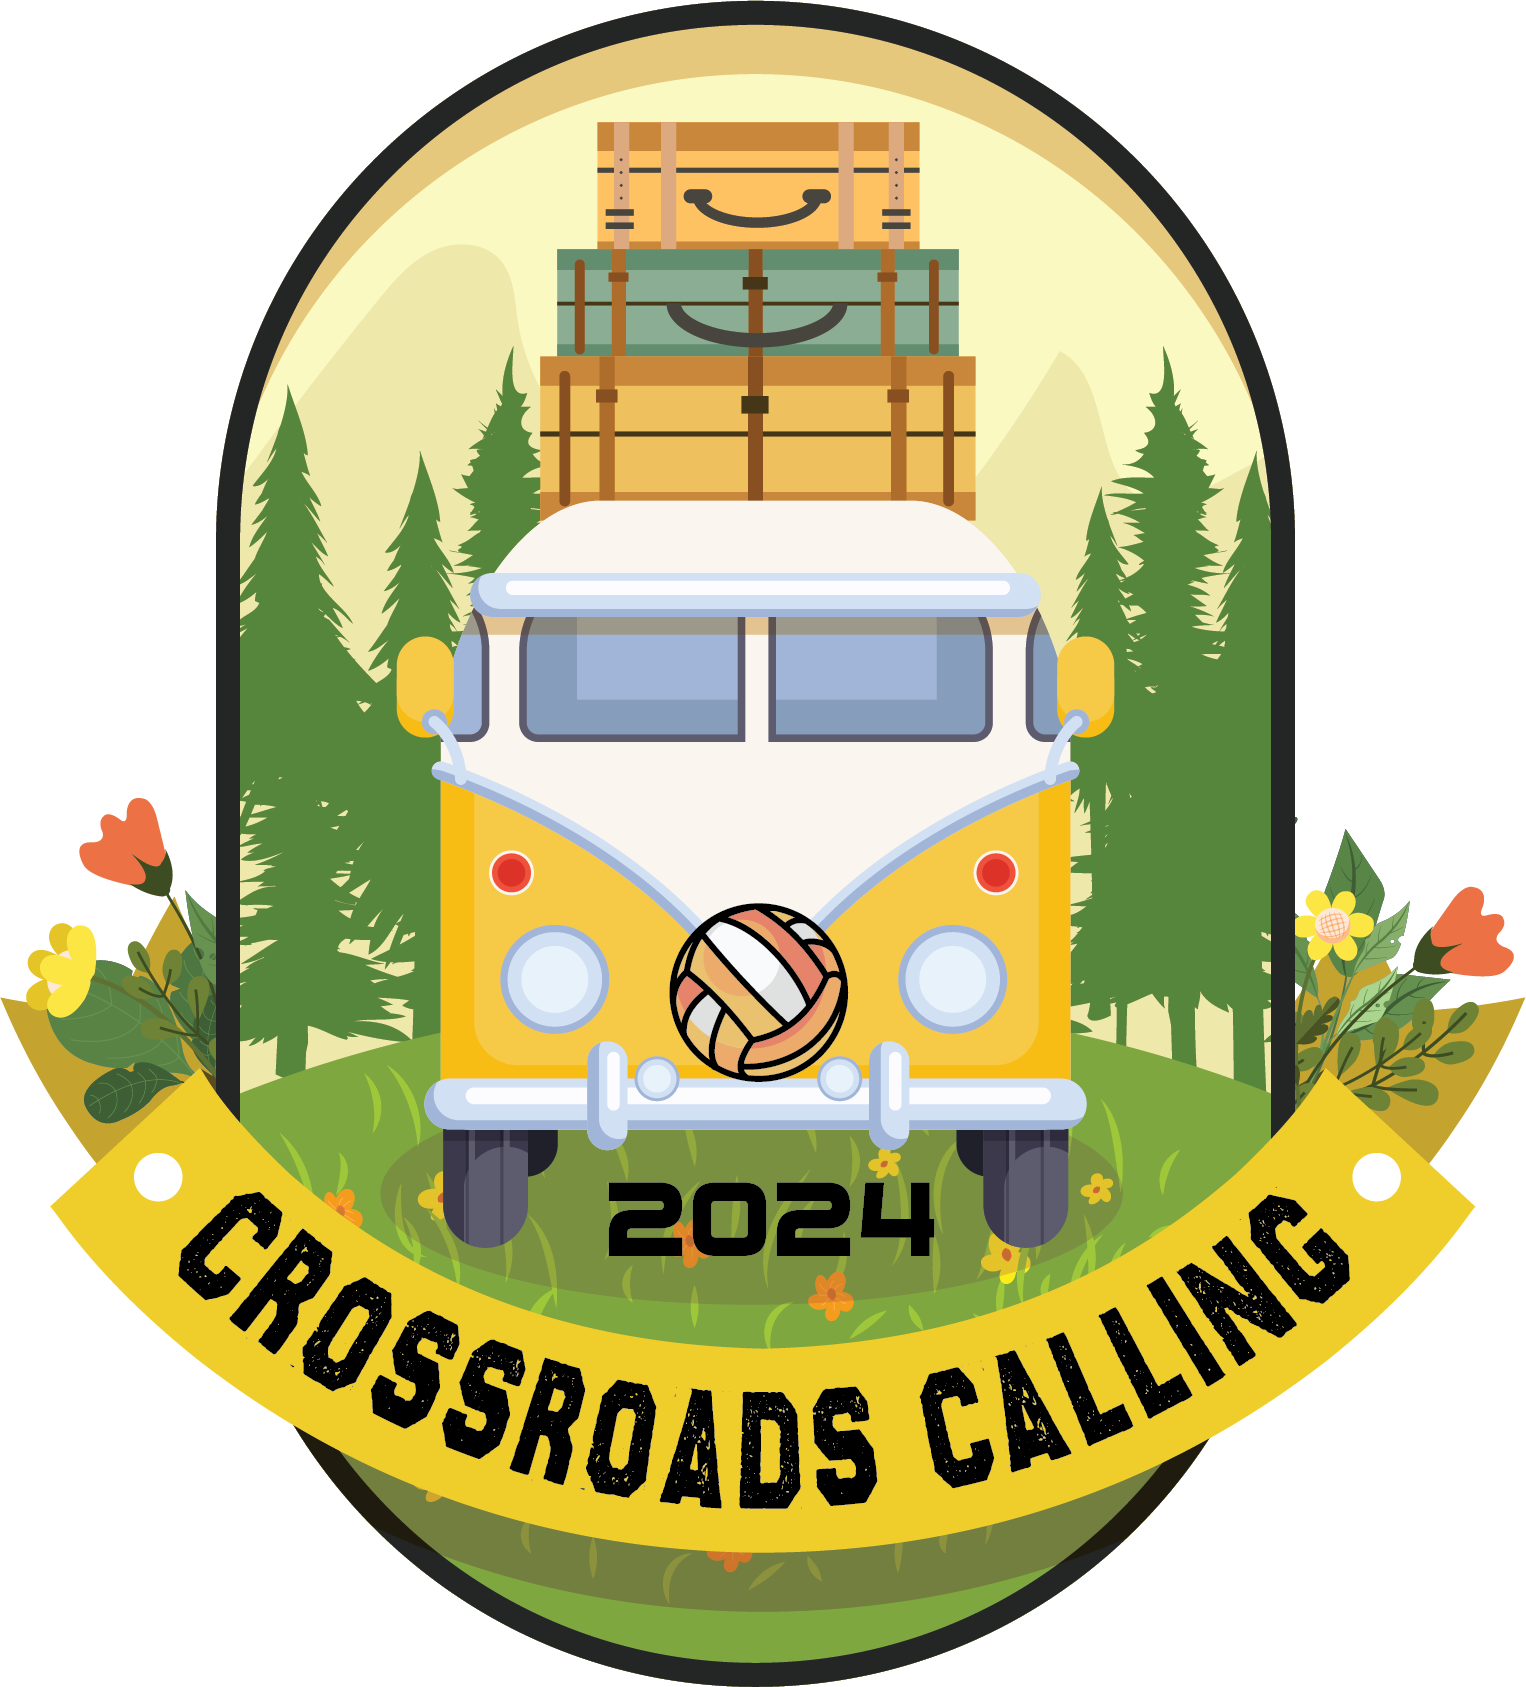 2024 Crossroads Calling